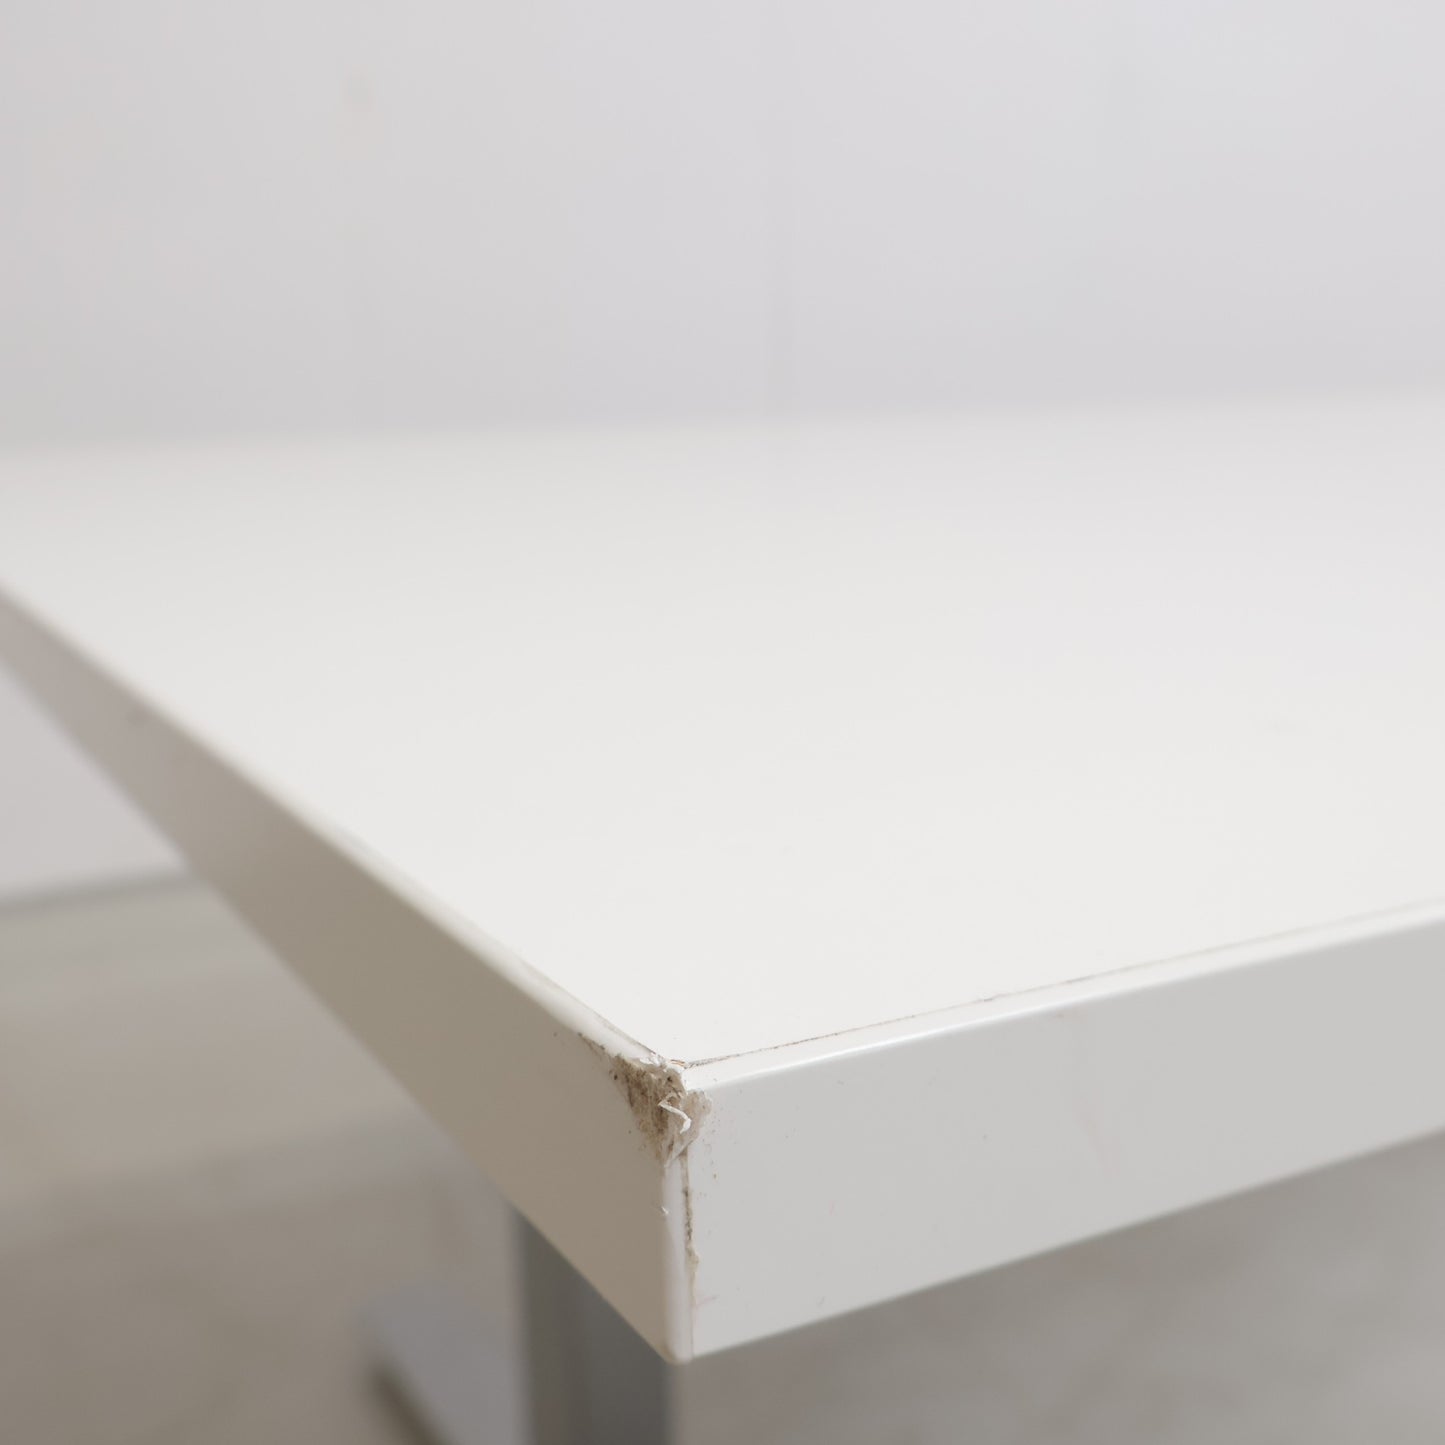 Kvalitetssikret | Elektrisk hev/senk skrivebord med venstresving fra AJ produkter